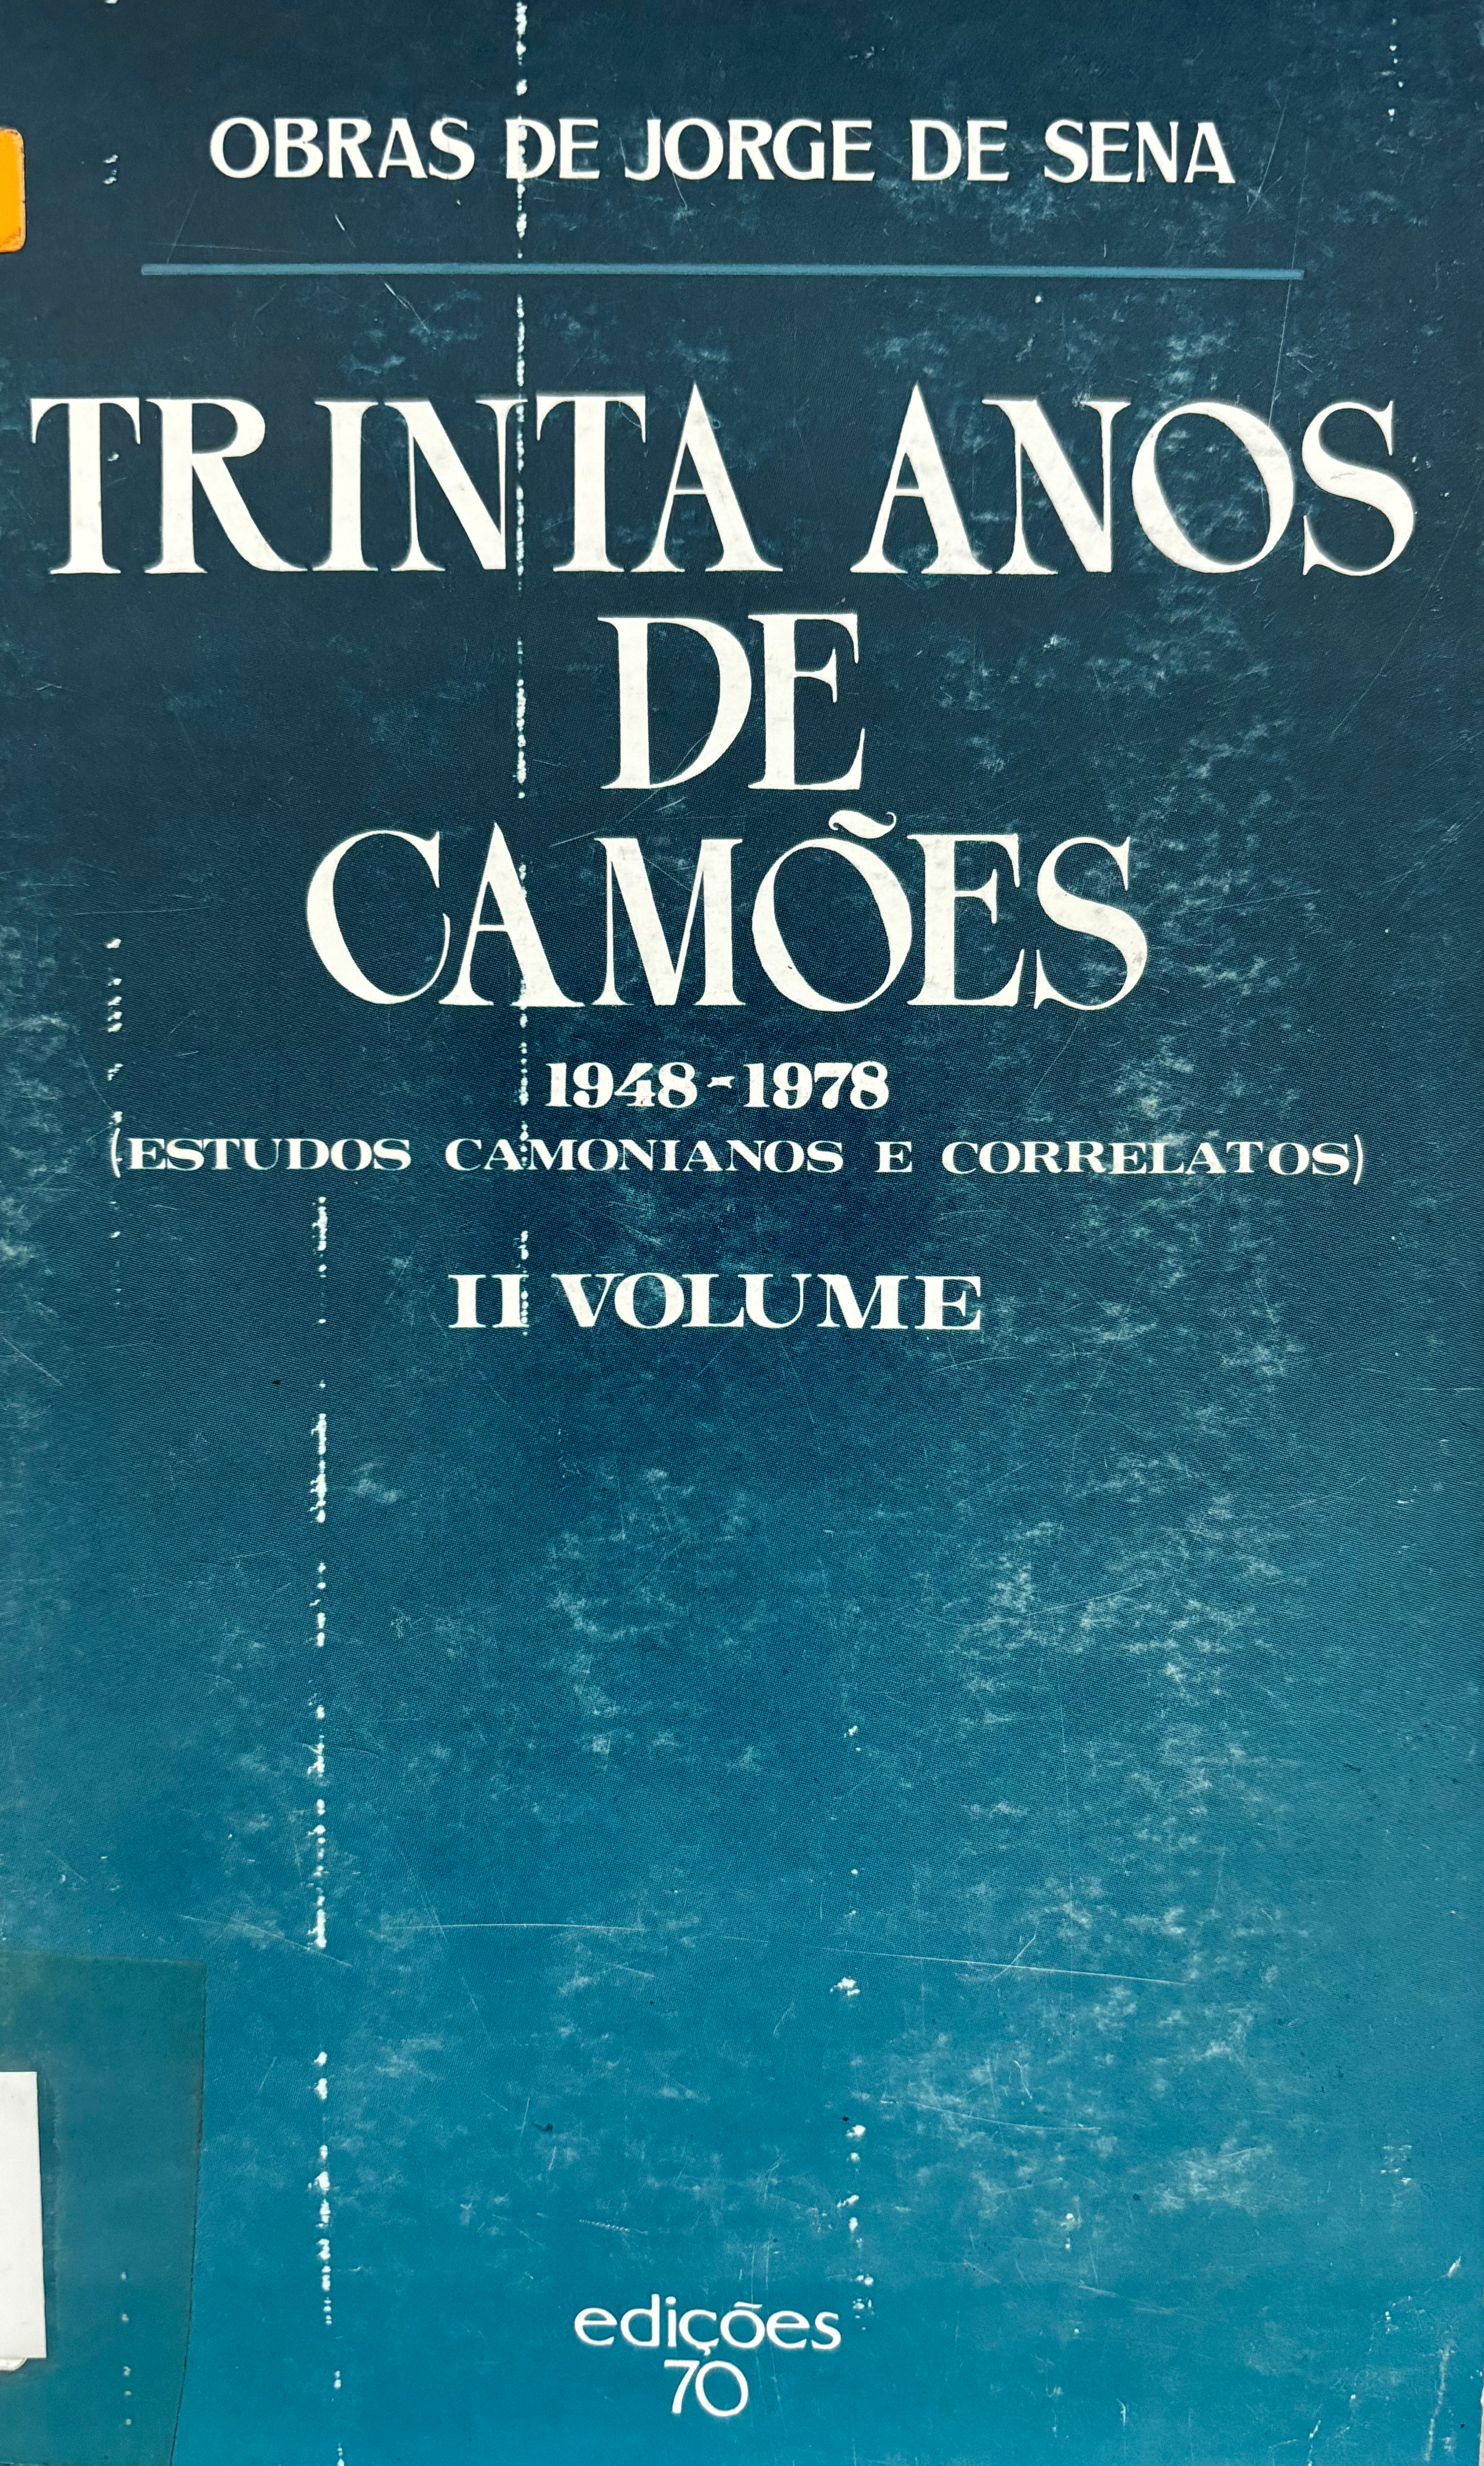 Trinta anos de Camões 1948-1978 